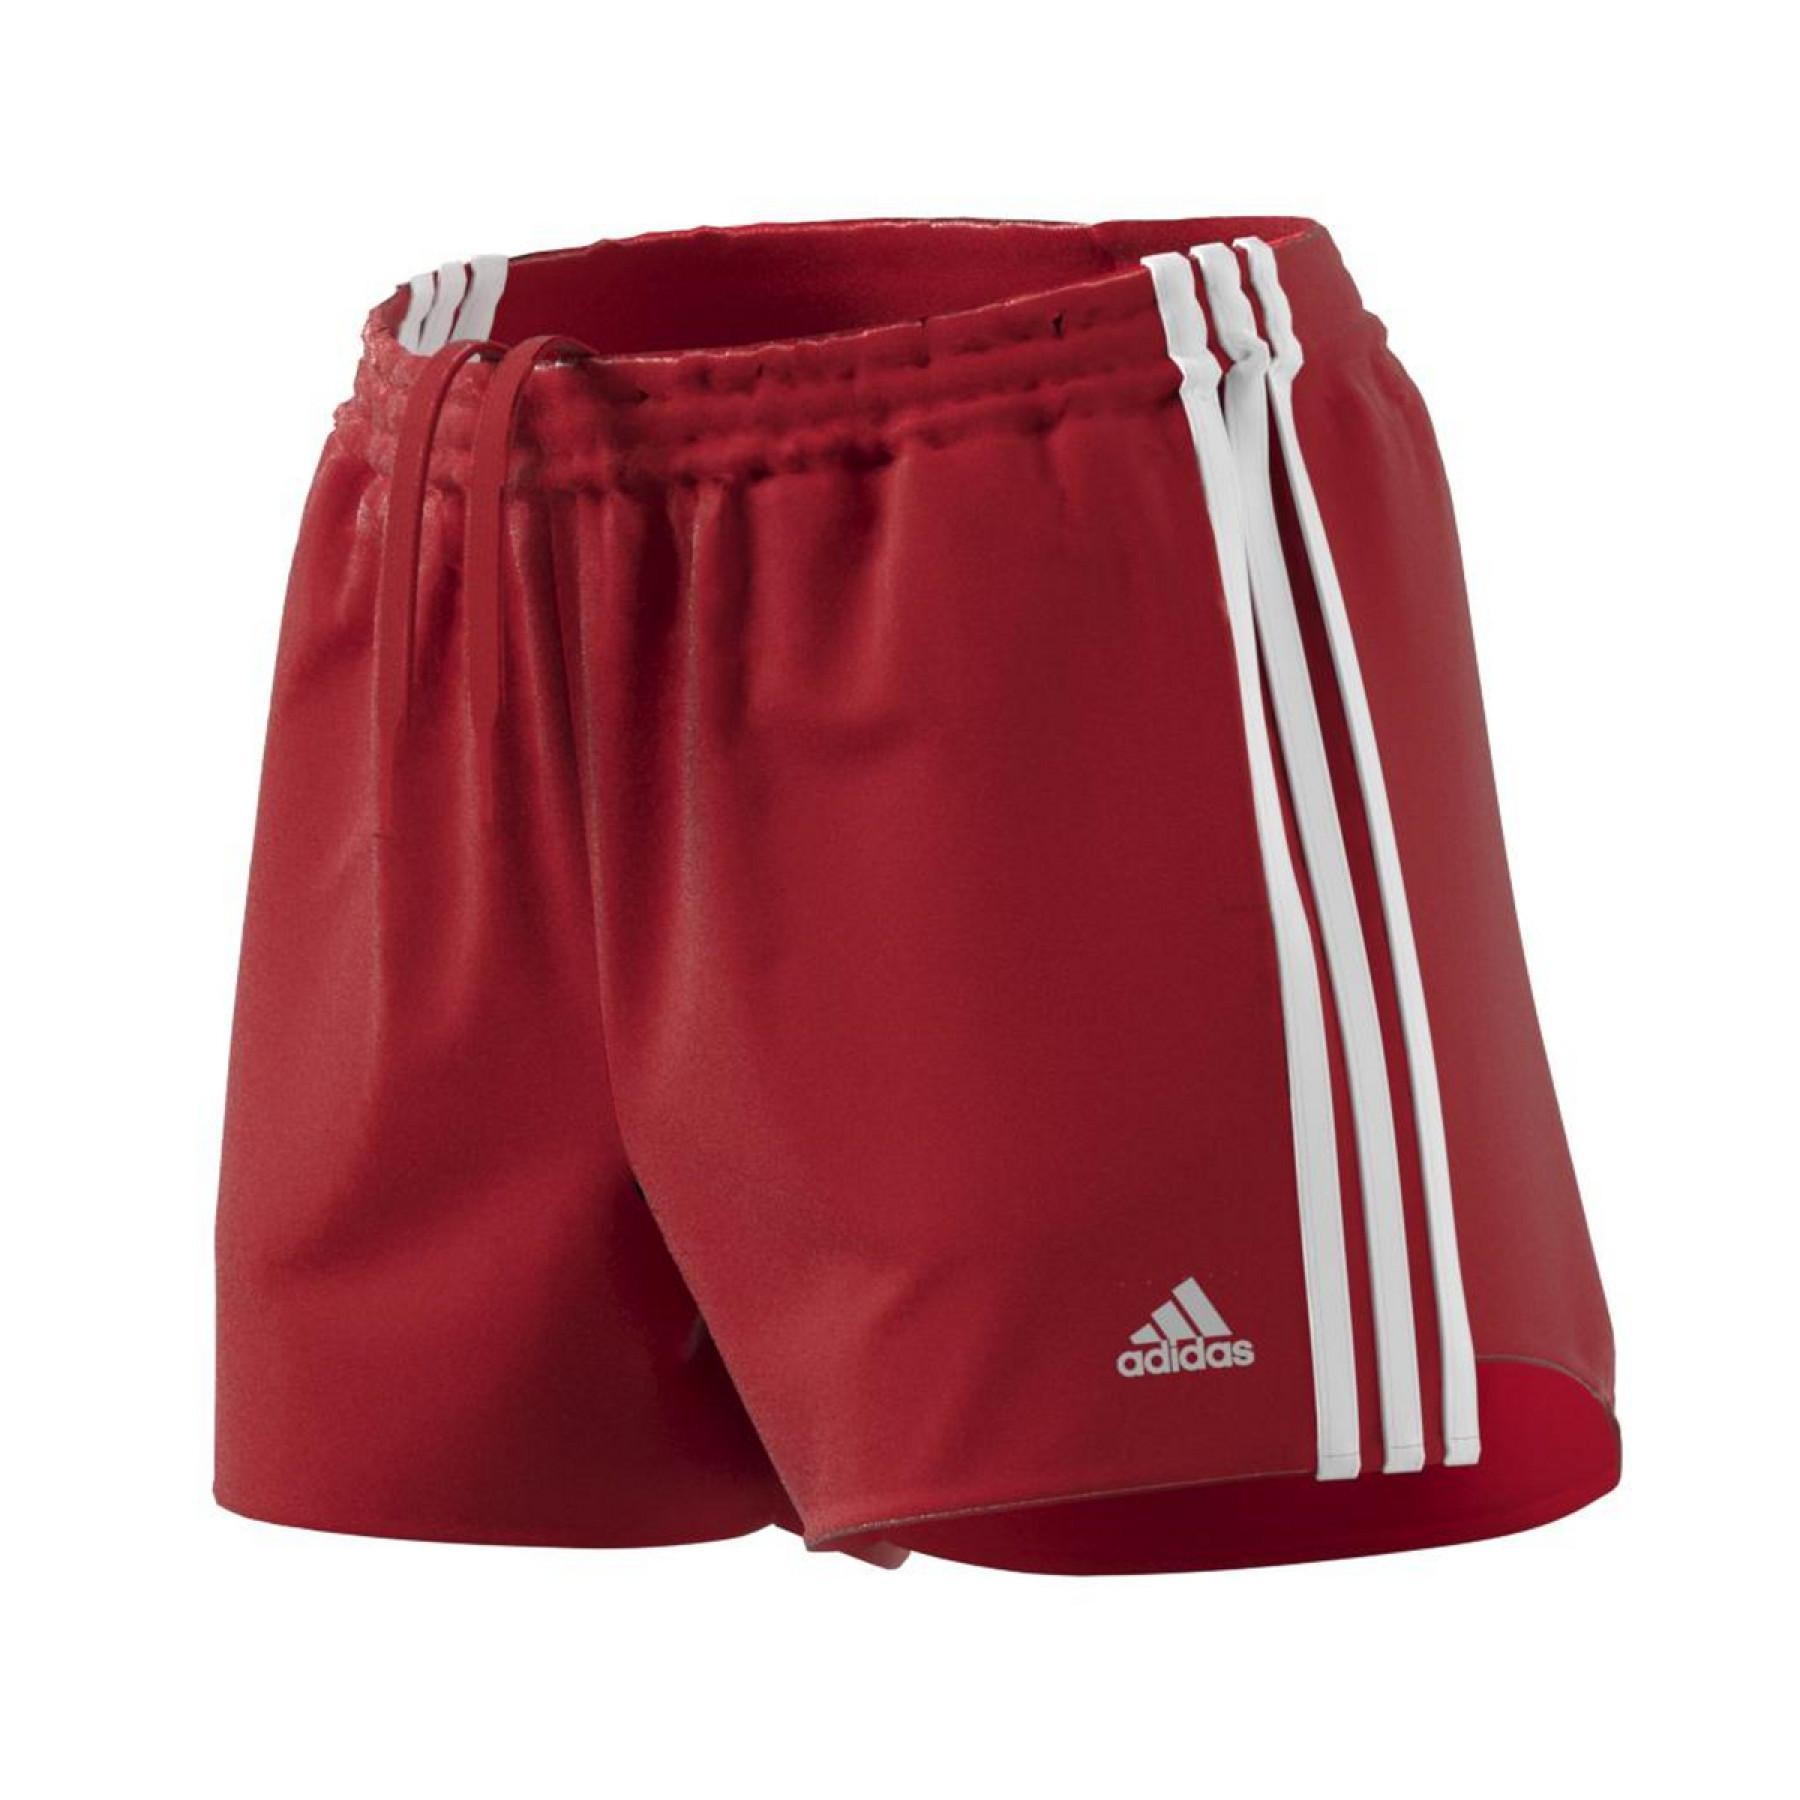 Receptor anchura oscuro Adidas pantalón mujer 3Star rojo | Deportes Periso. Tienda de equipamiento  deportivo